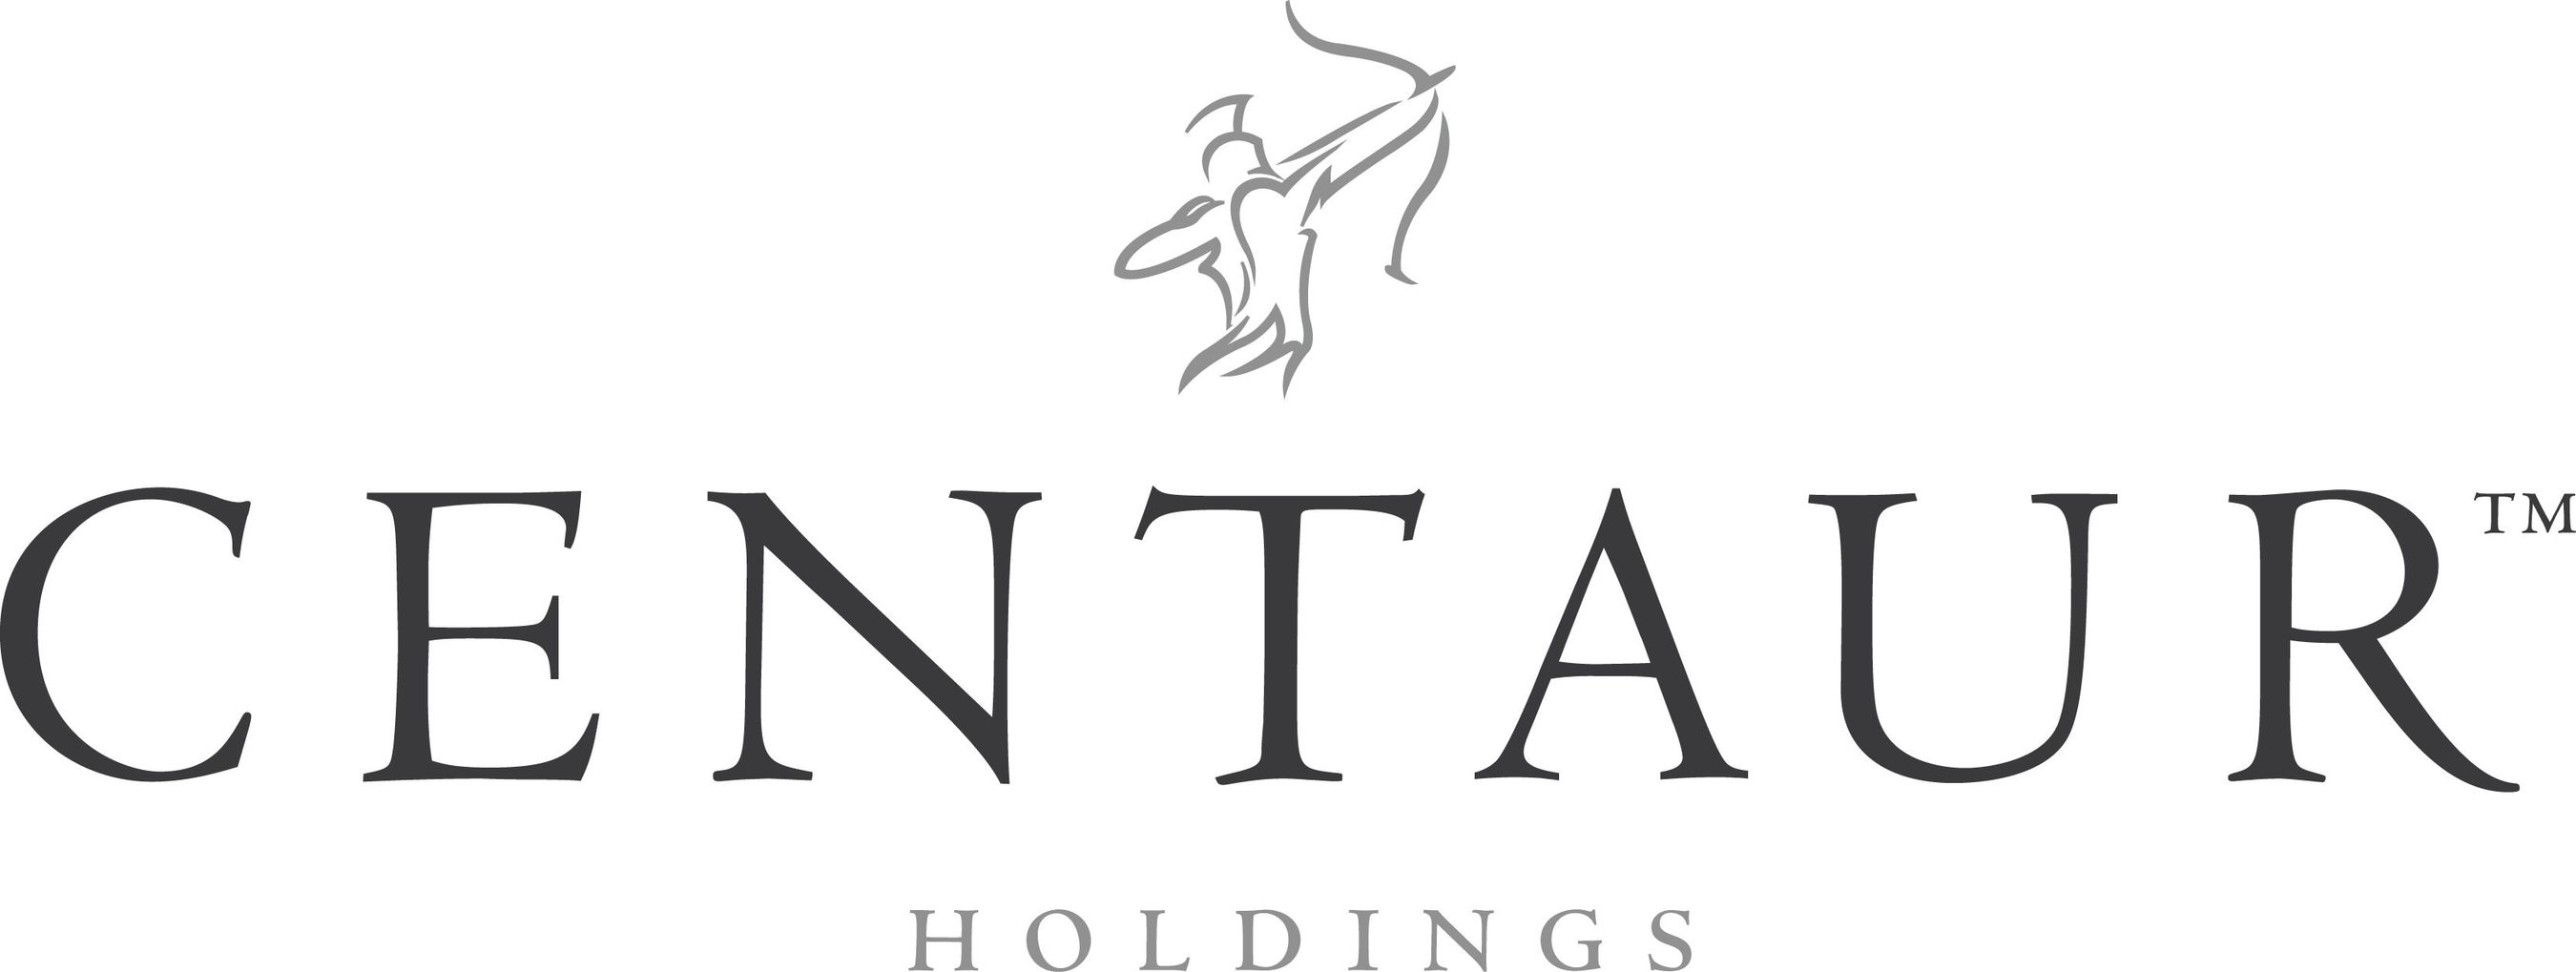 Centaur Group Finance Ltd logo (PRNewsFoto/Centaur Group Finance Ltd)